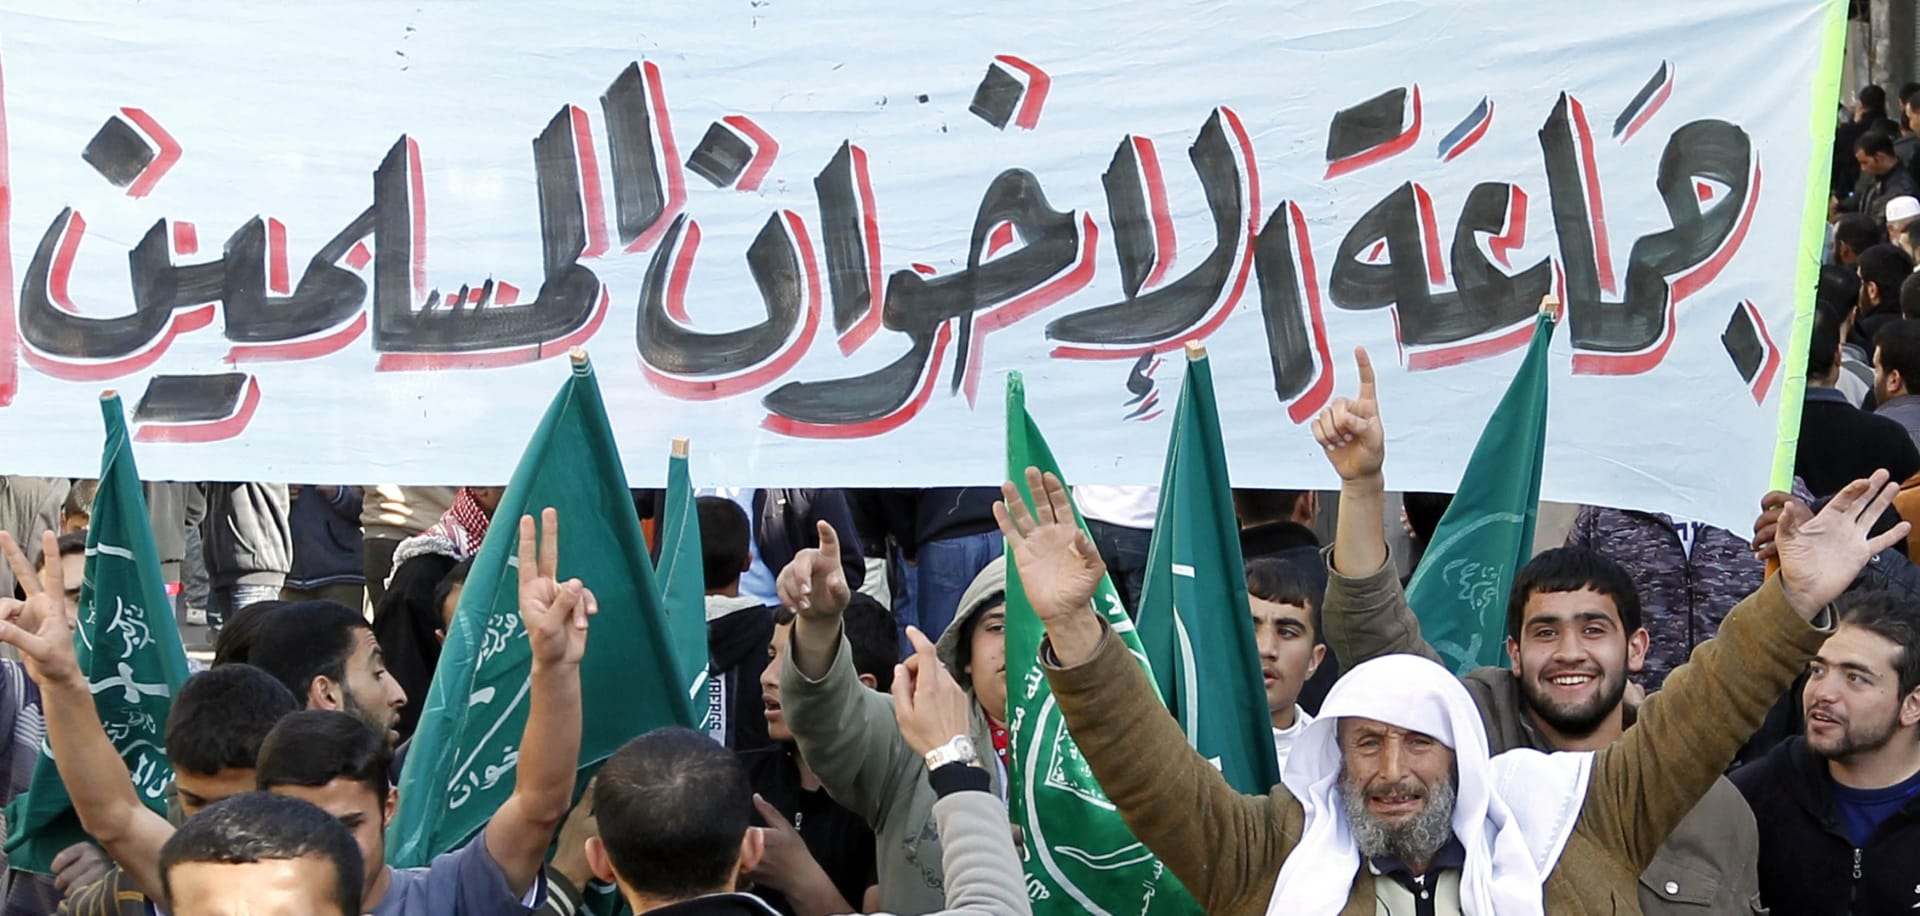 هيئة كبار العلماء السعودية: الإخوان المسلمون حزبيون يريدون التوصل إلى الحكم.. ولا يهتمون بالعقيدة ولا بالسنة